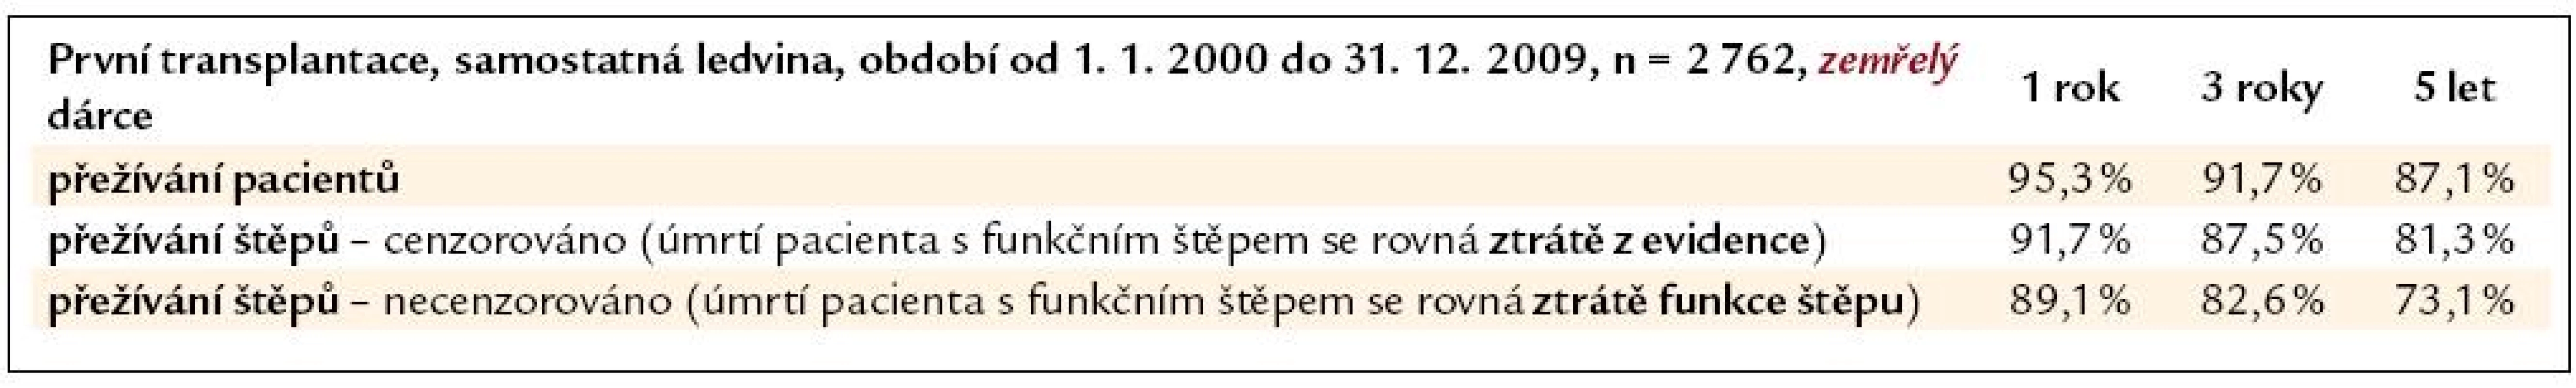 Přežívání pacientů a štěpů ledvin od zemřelého dárce, transplantovaných v ČR v letech 2000–2009 (1. transplantace).